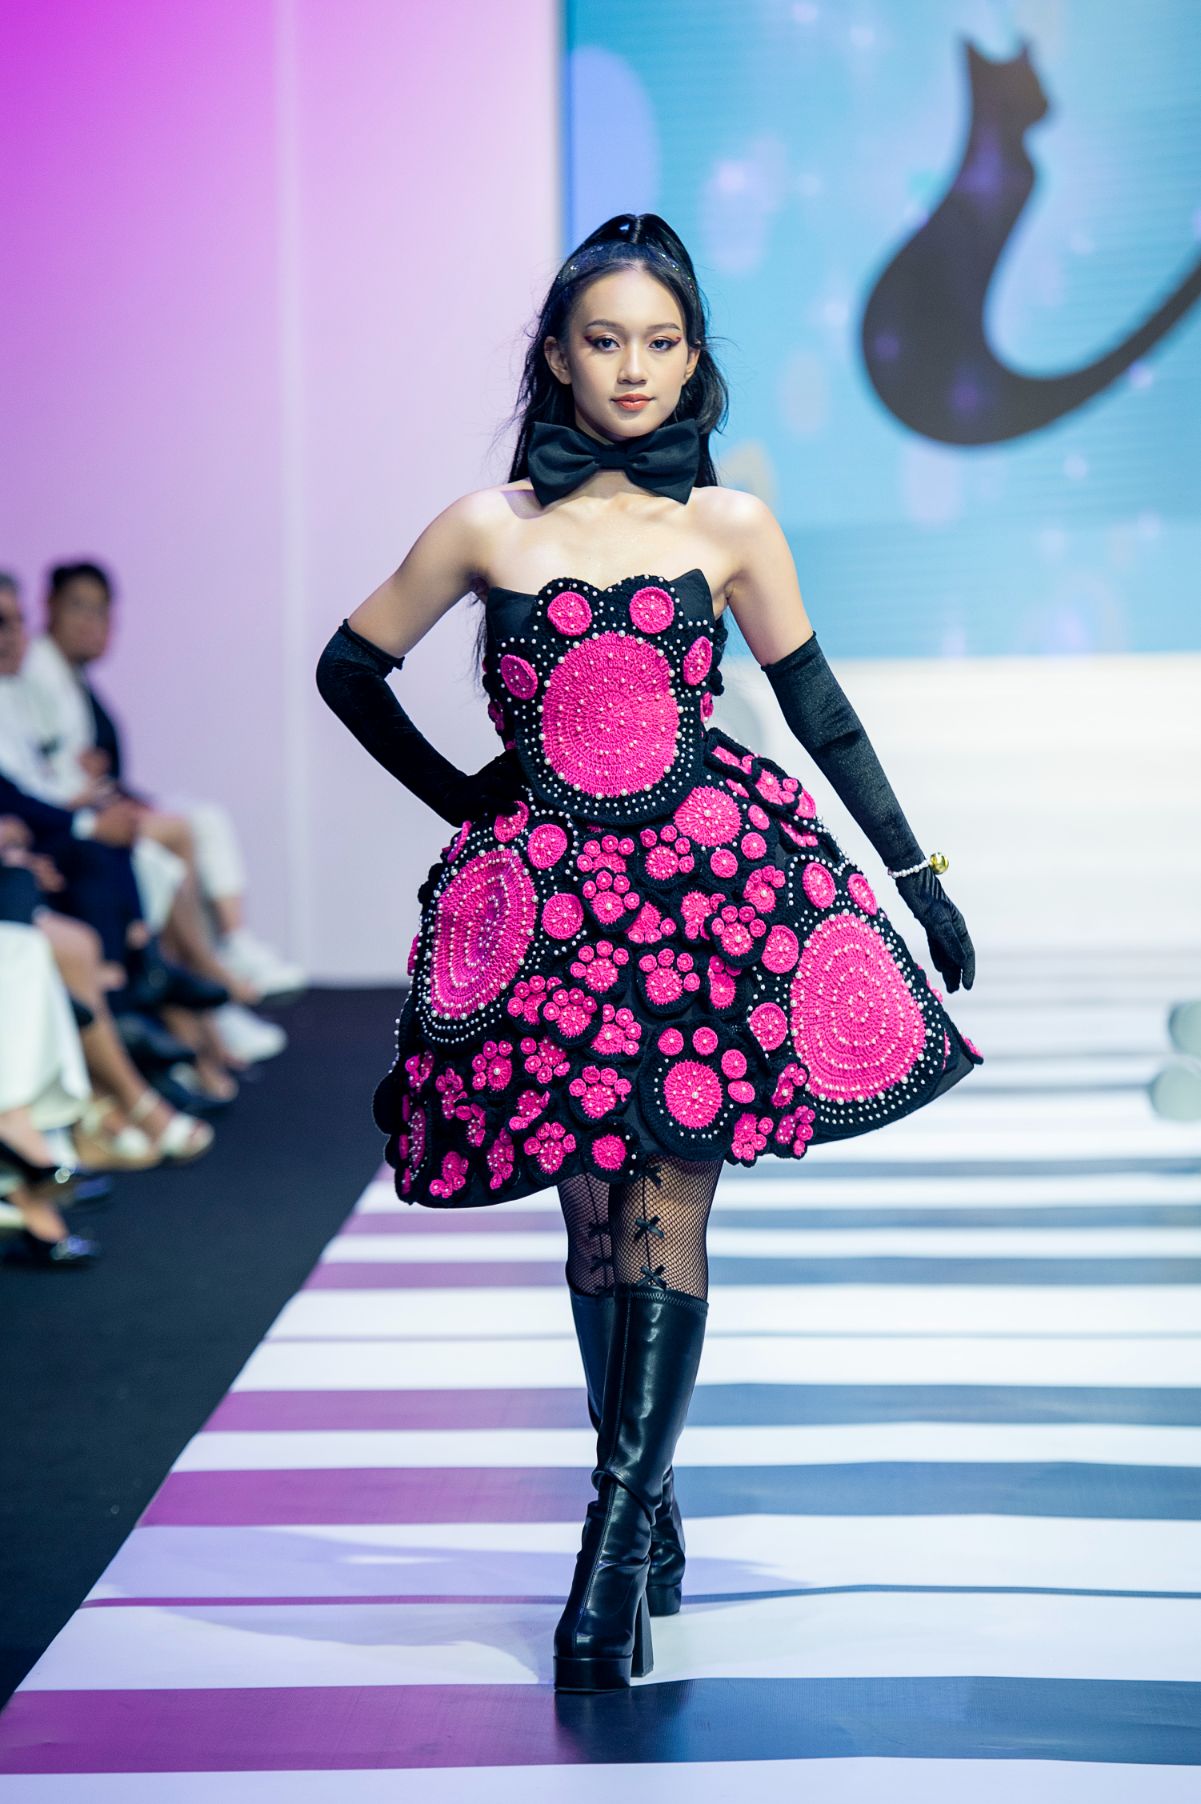 Thao Vy Lucy NTK Ha Kieu Oanh Gần 150 mẫu thiết kế được trình diễn tại Đêm hội mẫu nhí 2022   Fashion Melody